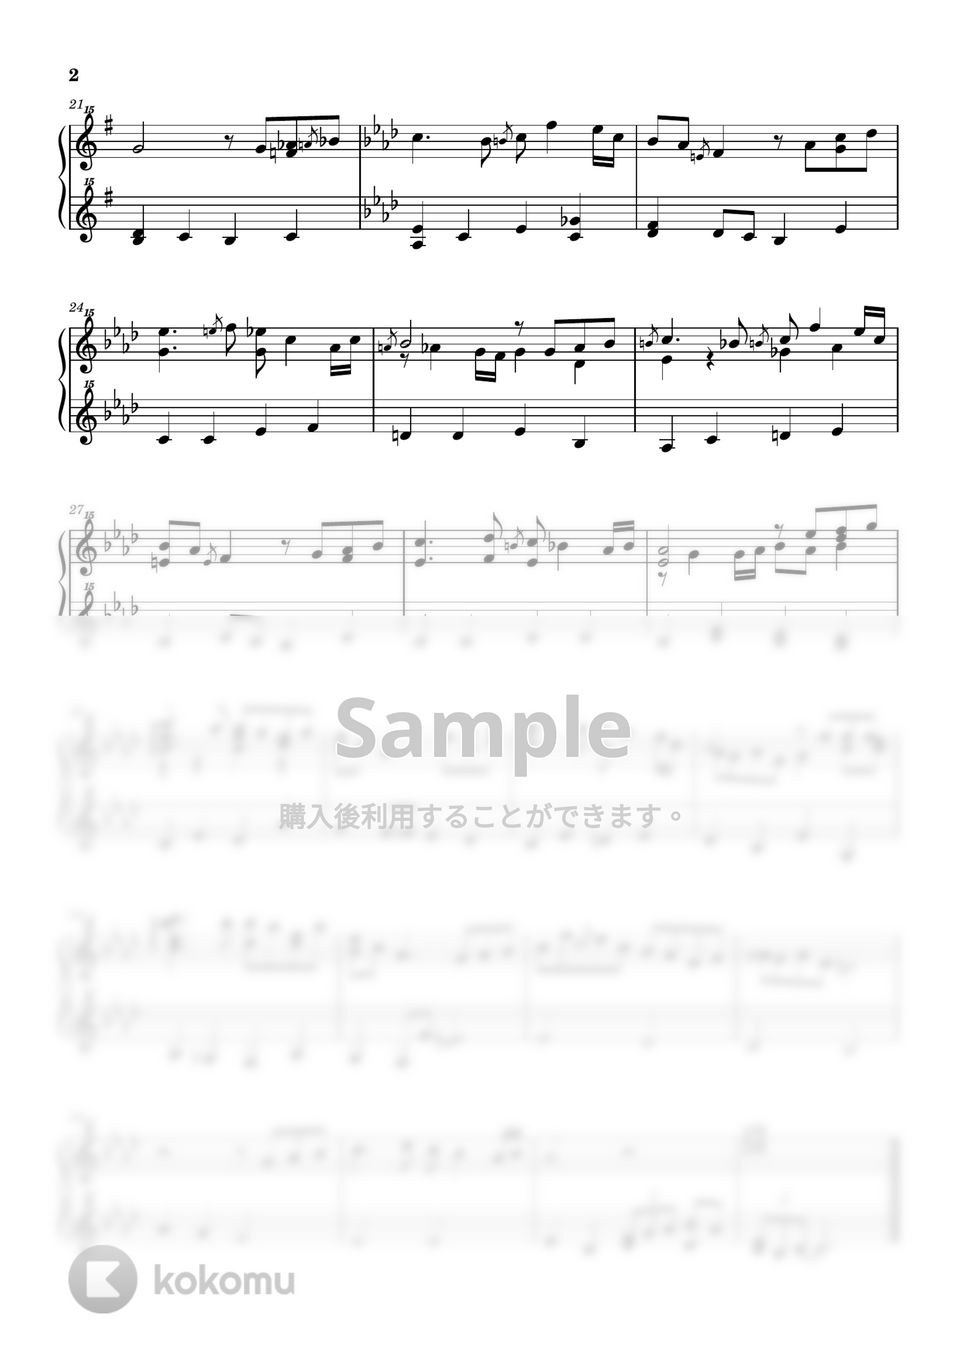 アイルランド民謡 - ロンドンデリーの歌 Londonderry Air (ピアノ / トイピアノ / 32鍵盤) by 川西 三裕